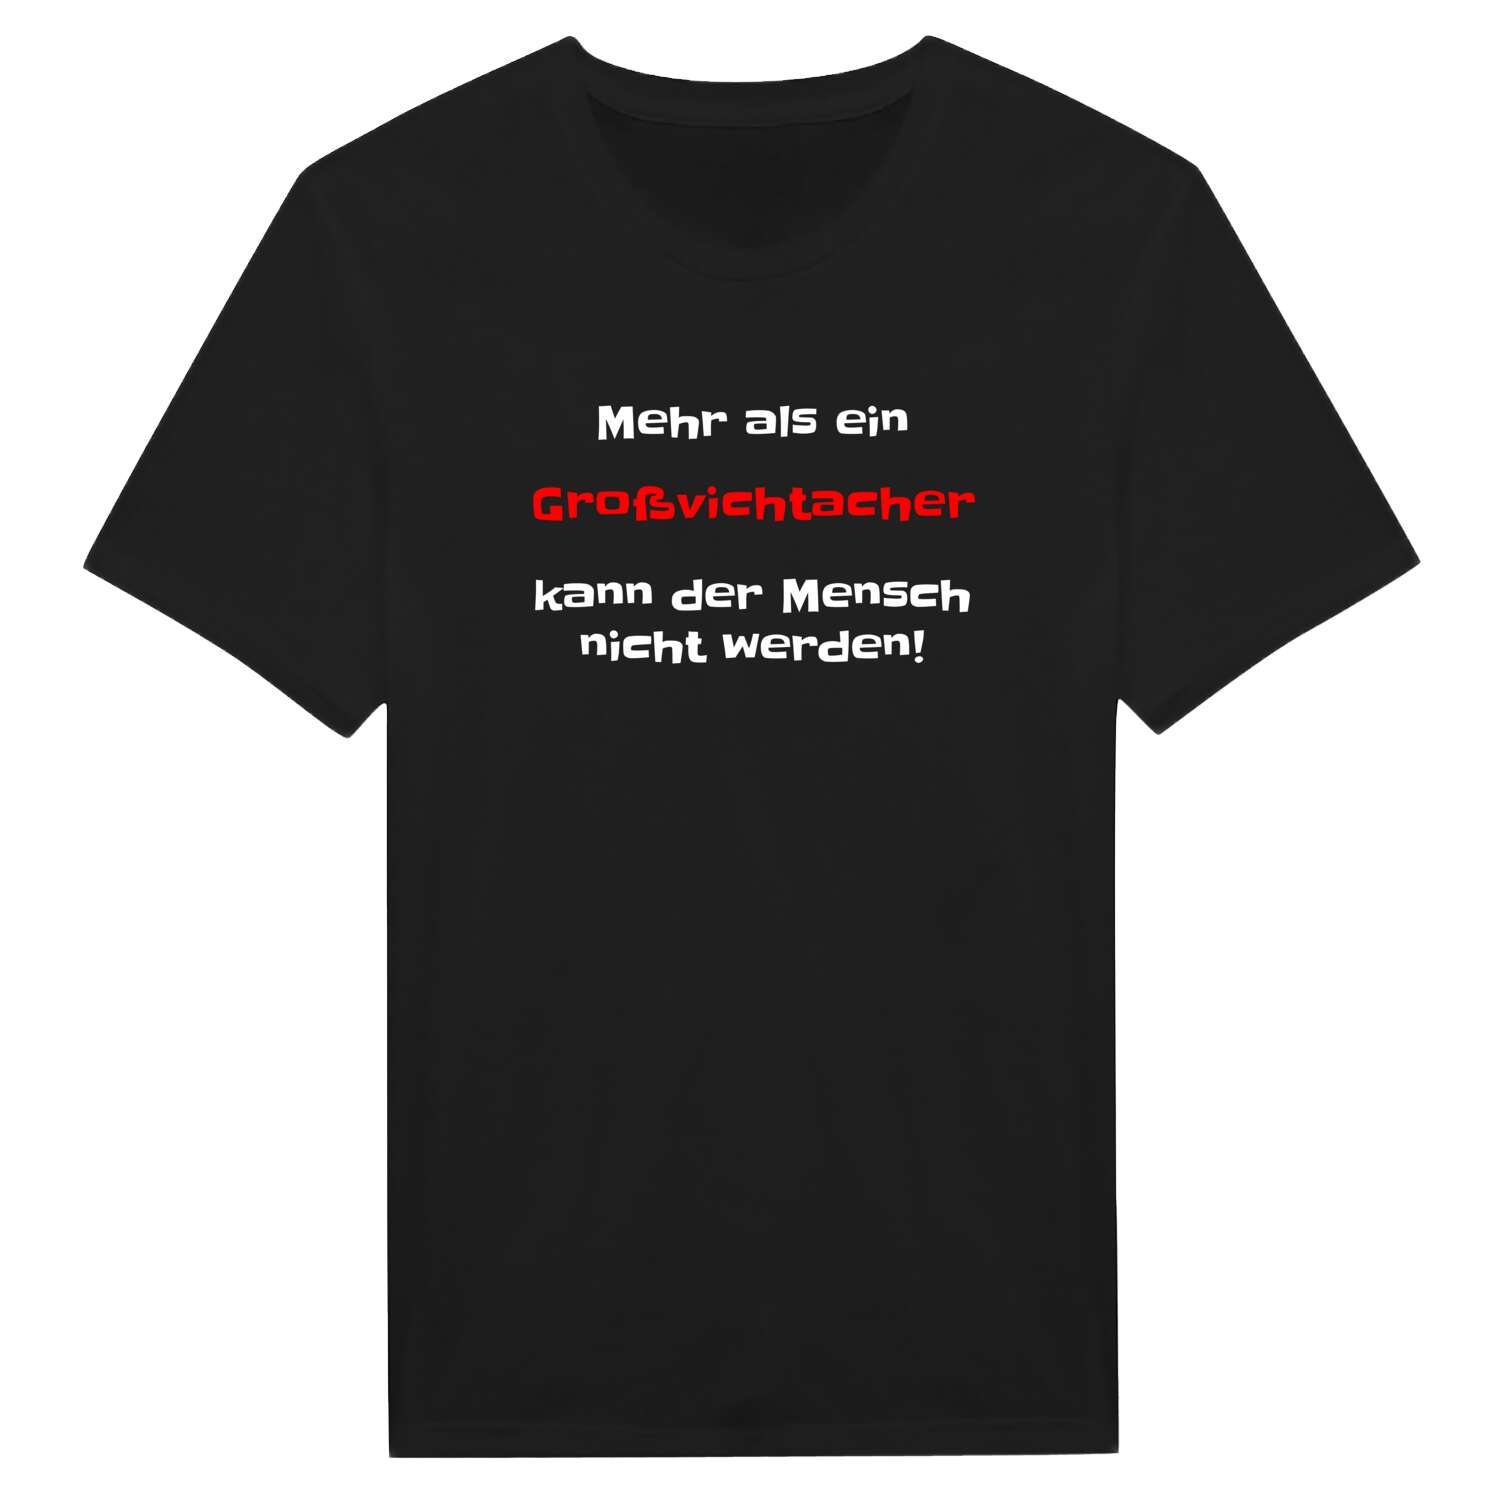 Großvichtach T-Shirt »Mehr als ein«